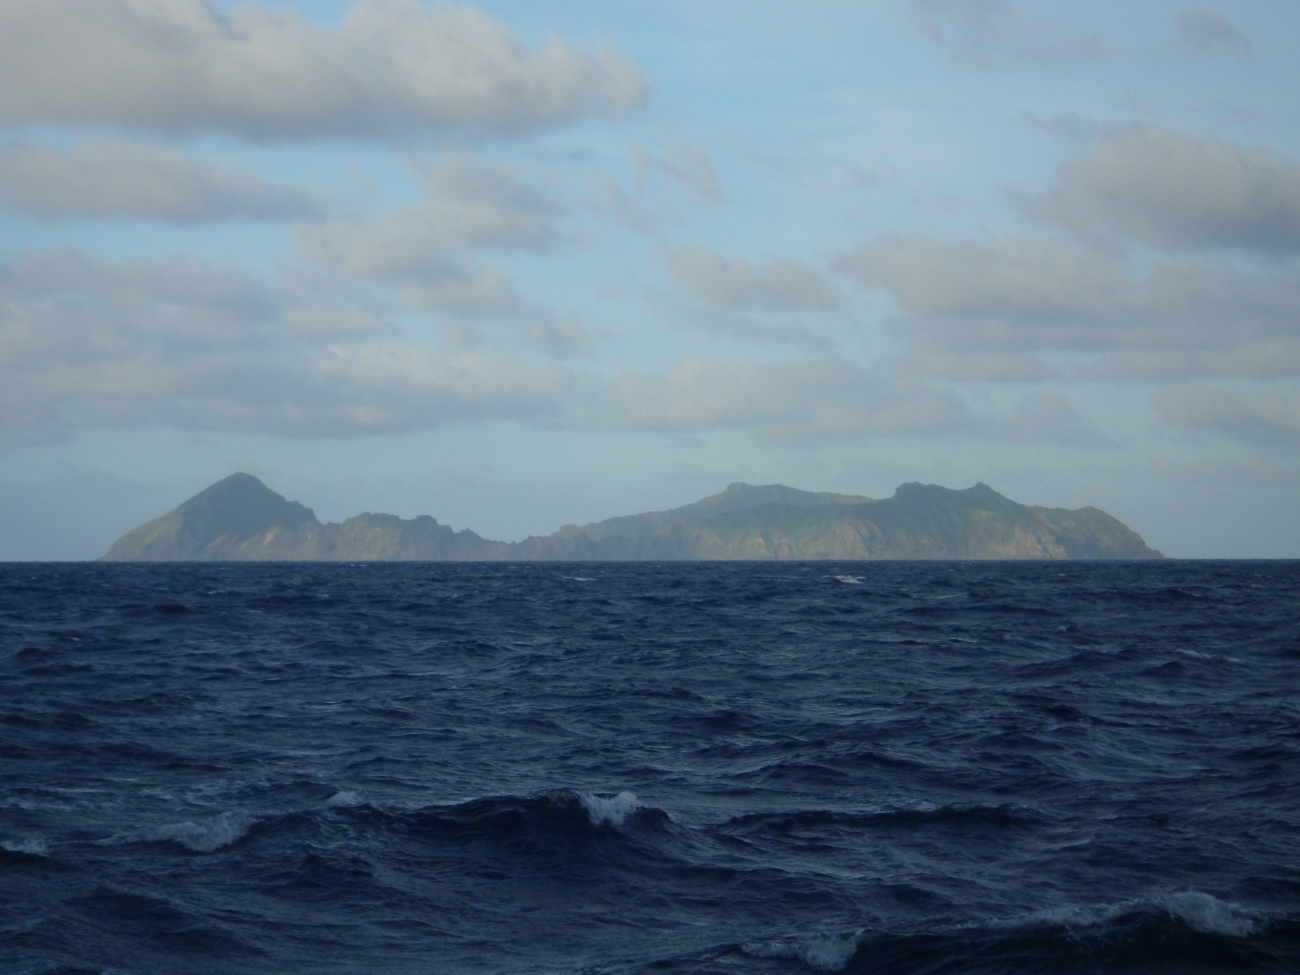 The island of Maug